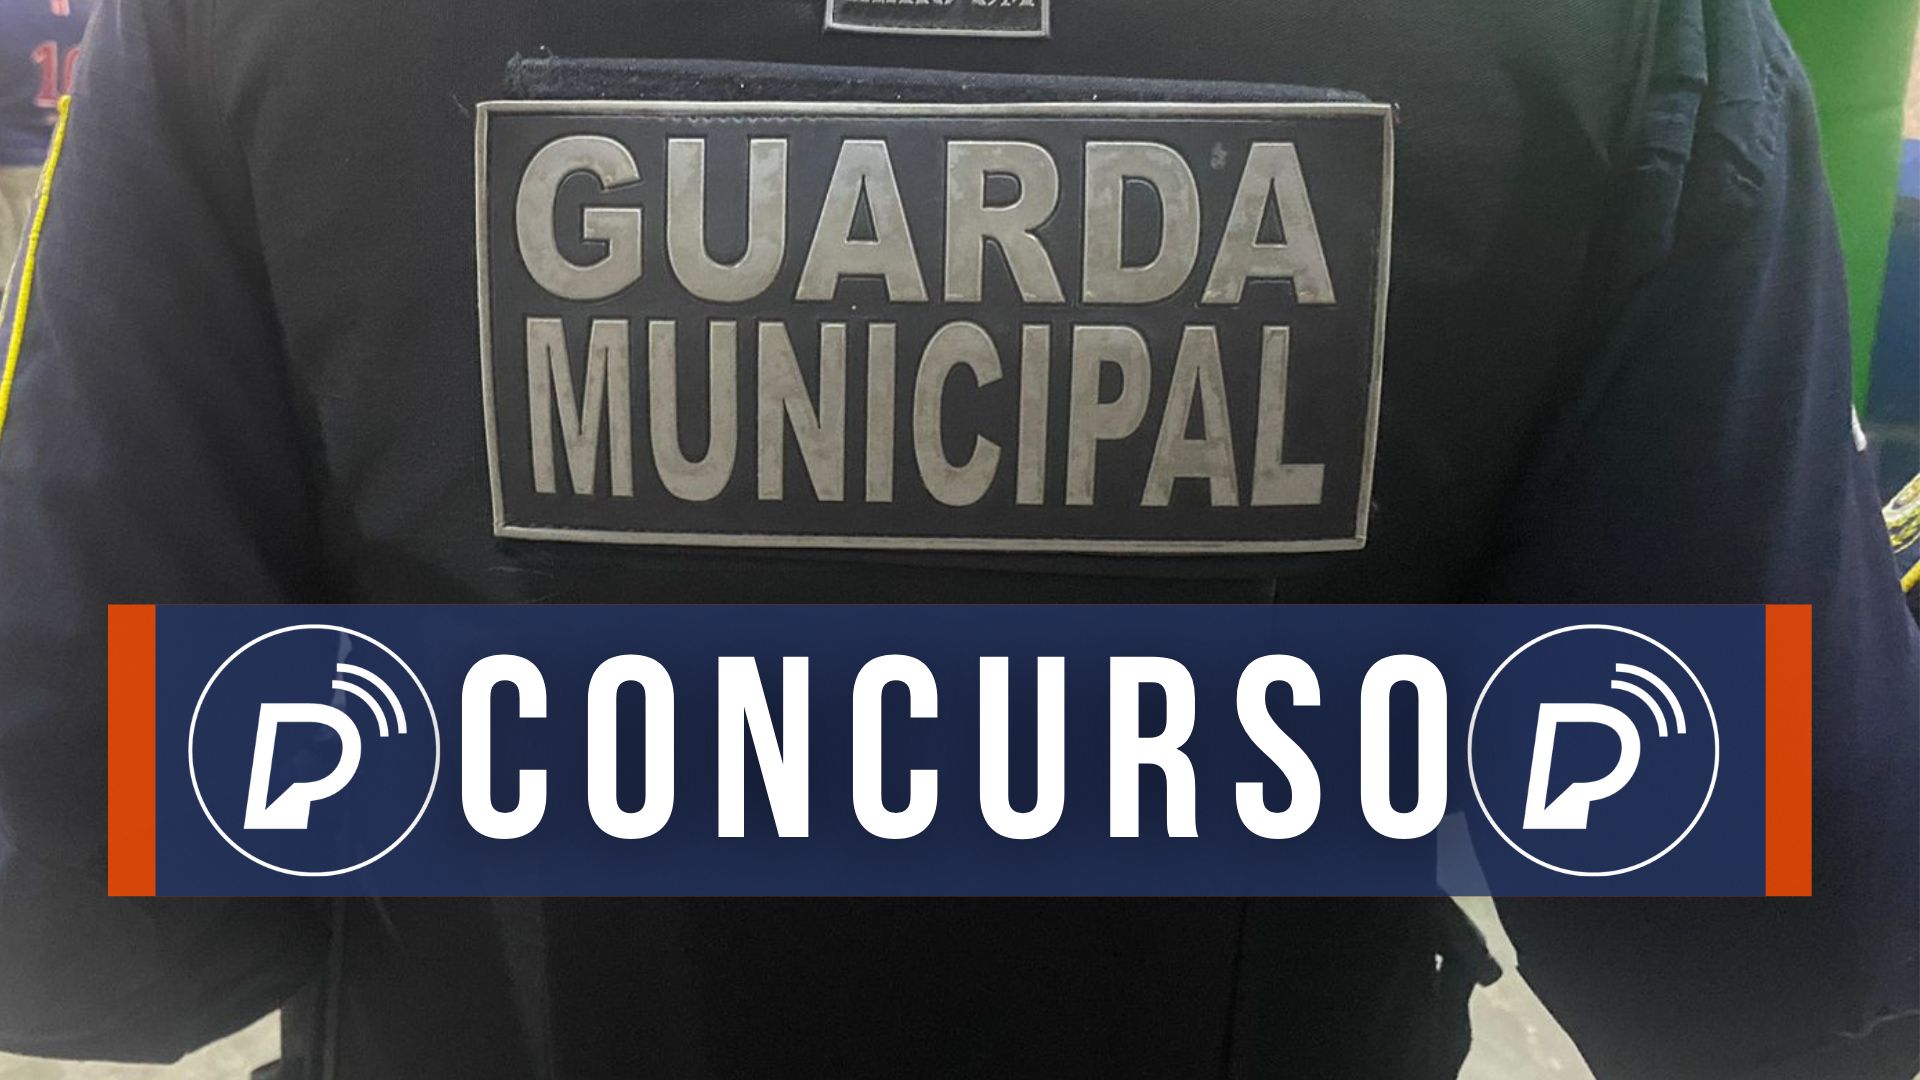 Concurso da Guarda Municipal. Foto: Everthon Santos/Portal de Prefeitura